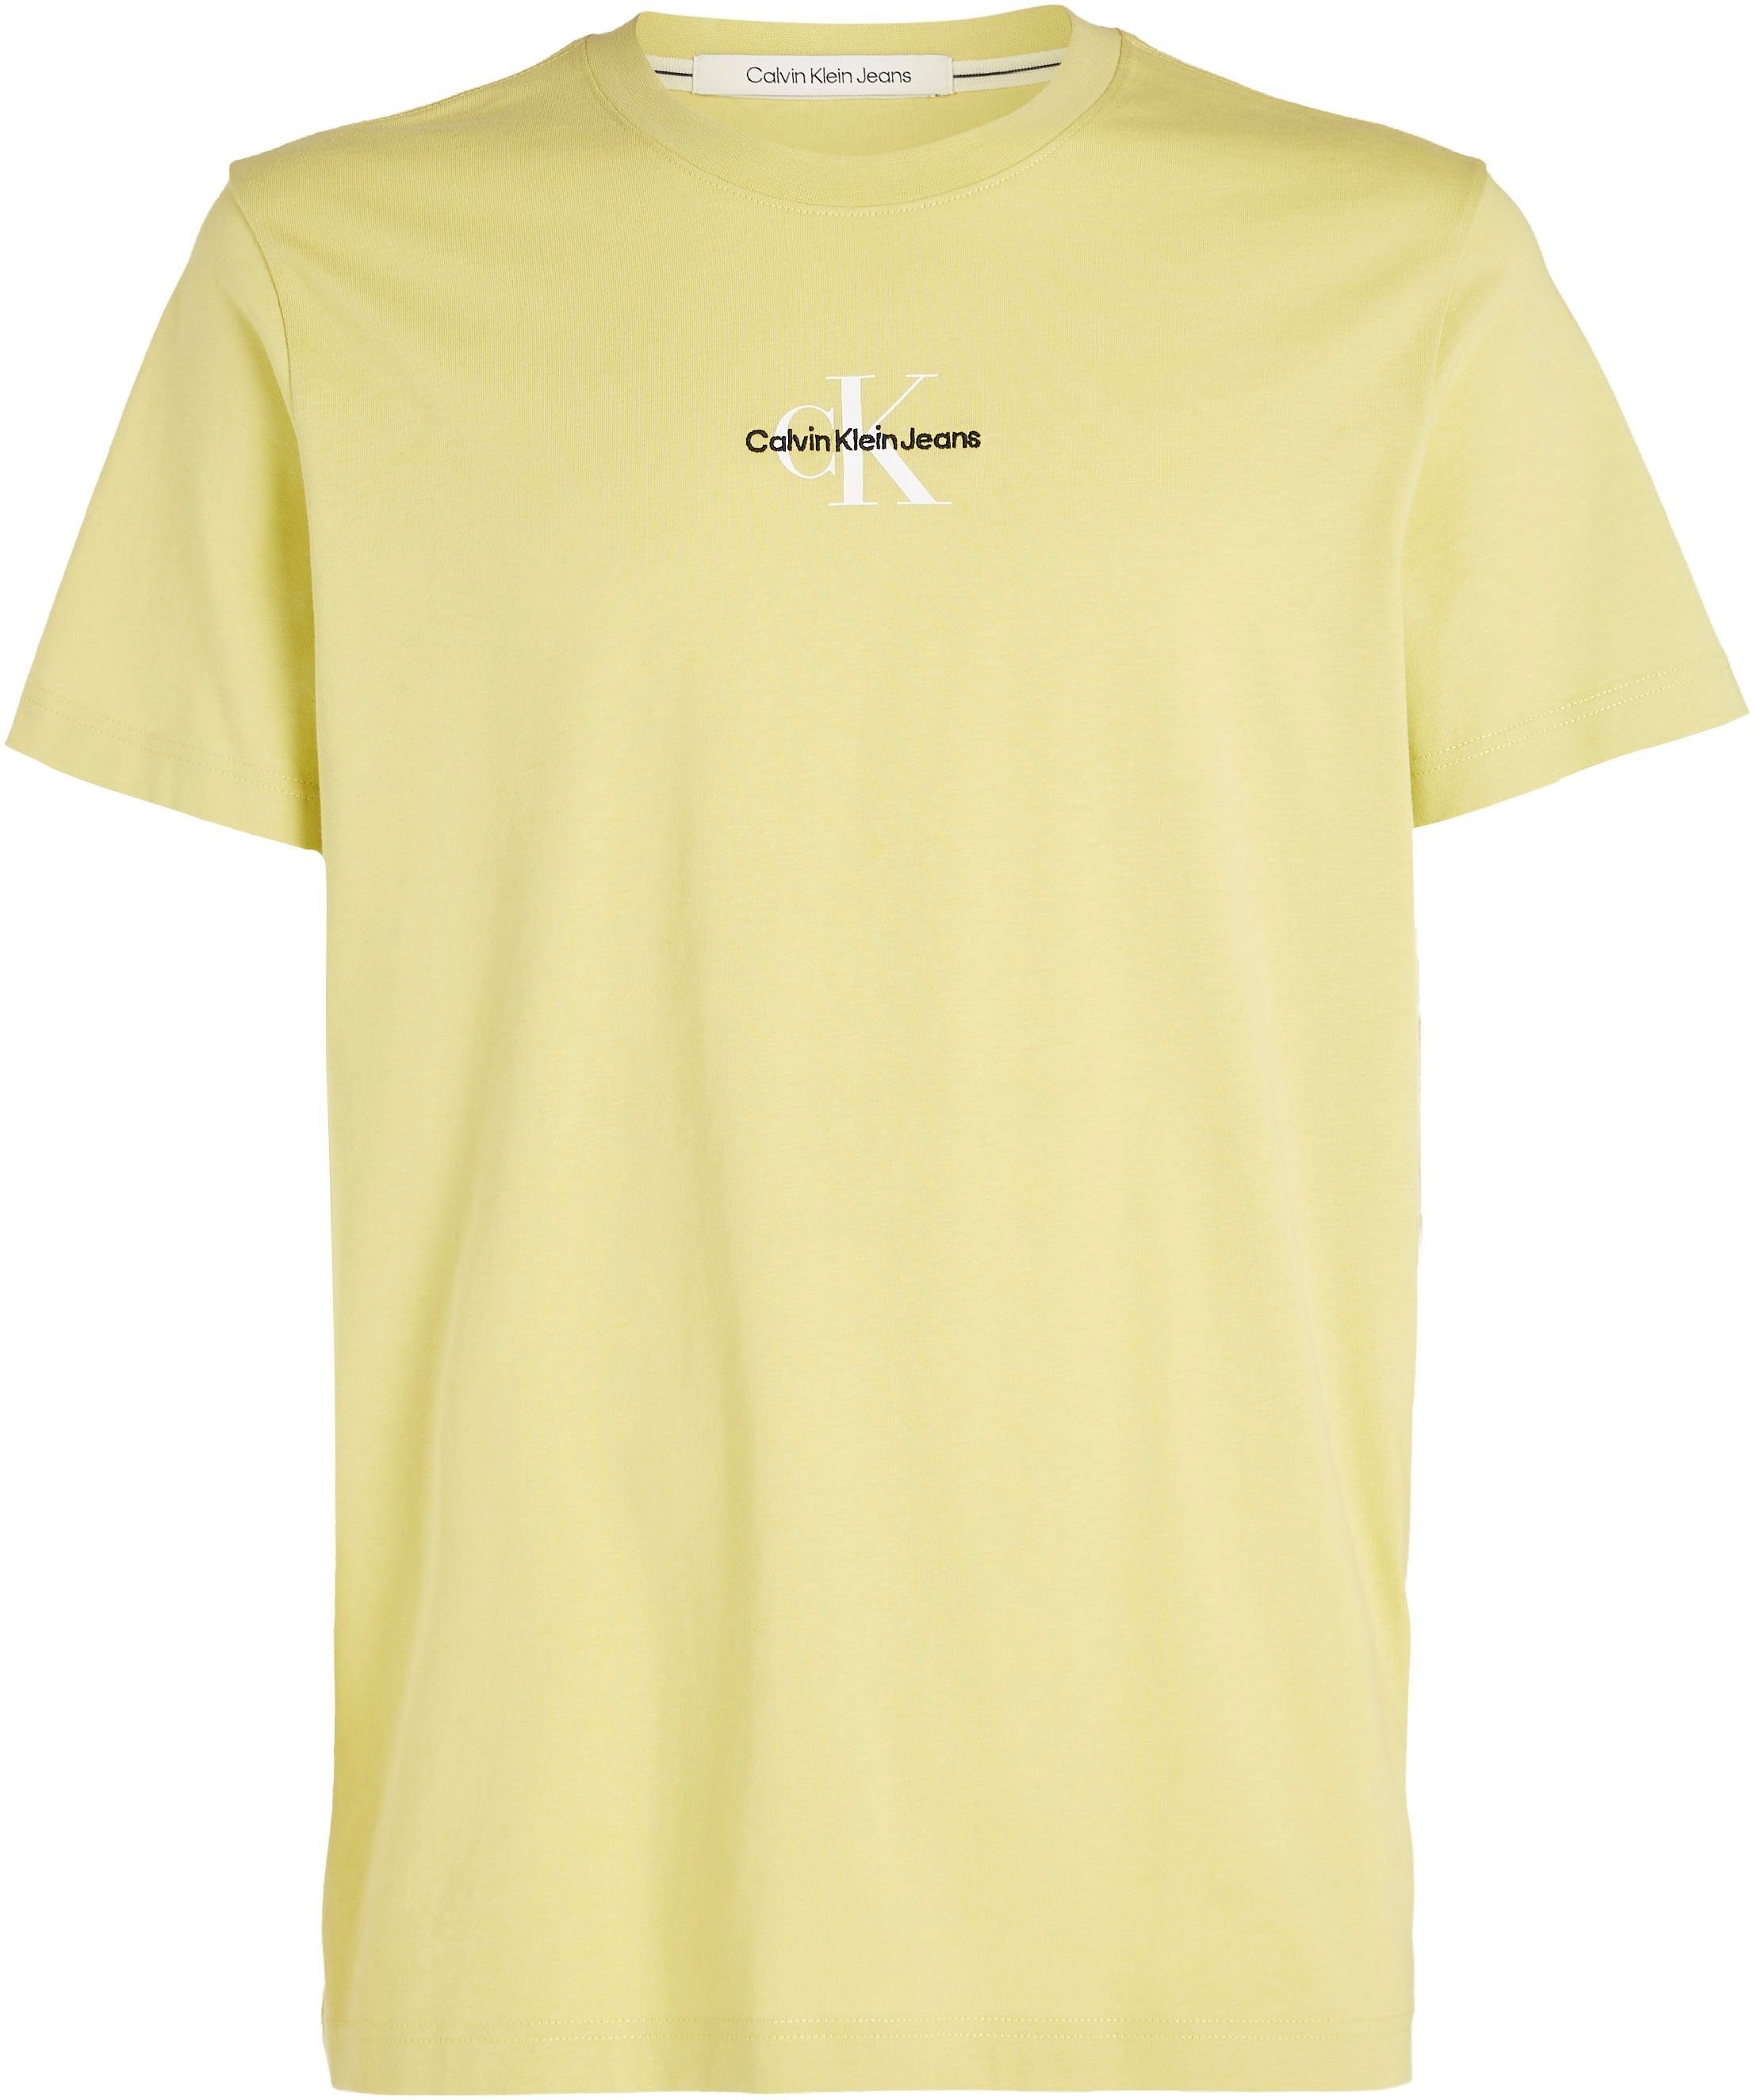 Sand Yellow T-Shirt REGULAR MONOLOGO Jeans Logoschriftzug TEE Klein mit Calvin